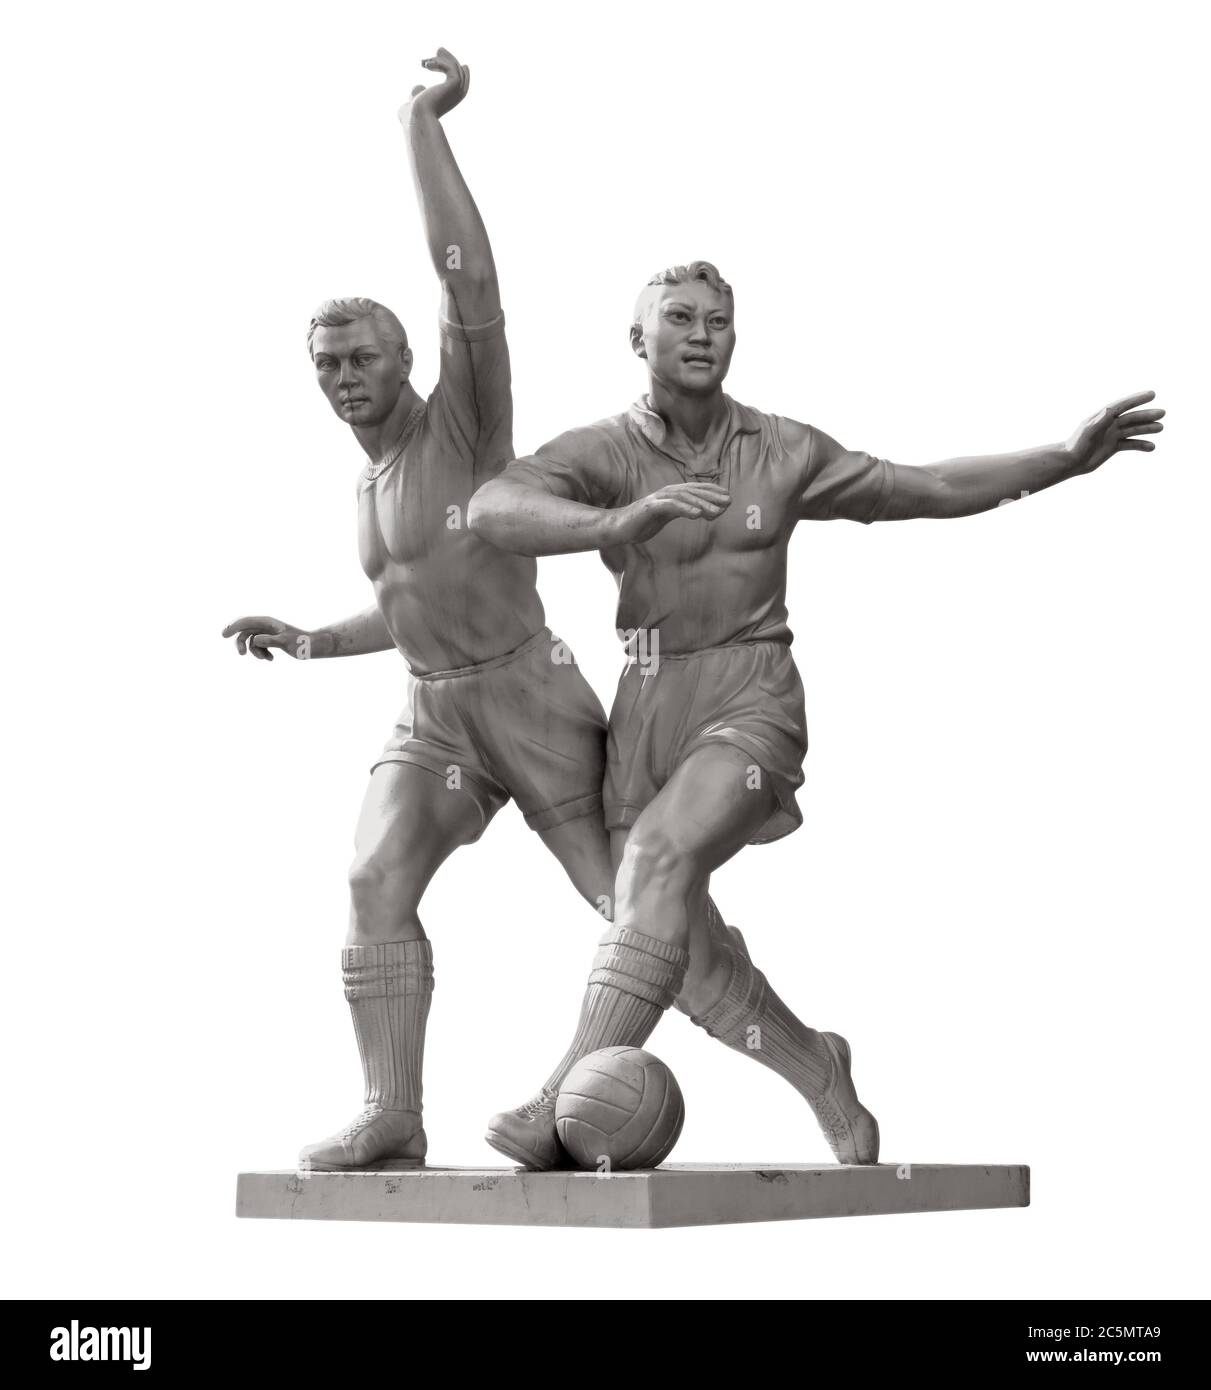 Ancienne sculpture de joueurs de football isolés sur blanc. Masque inclus. Banque D'Images